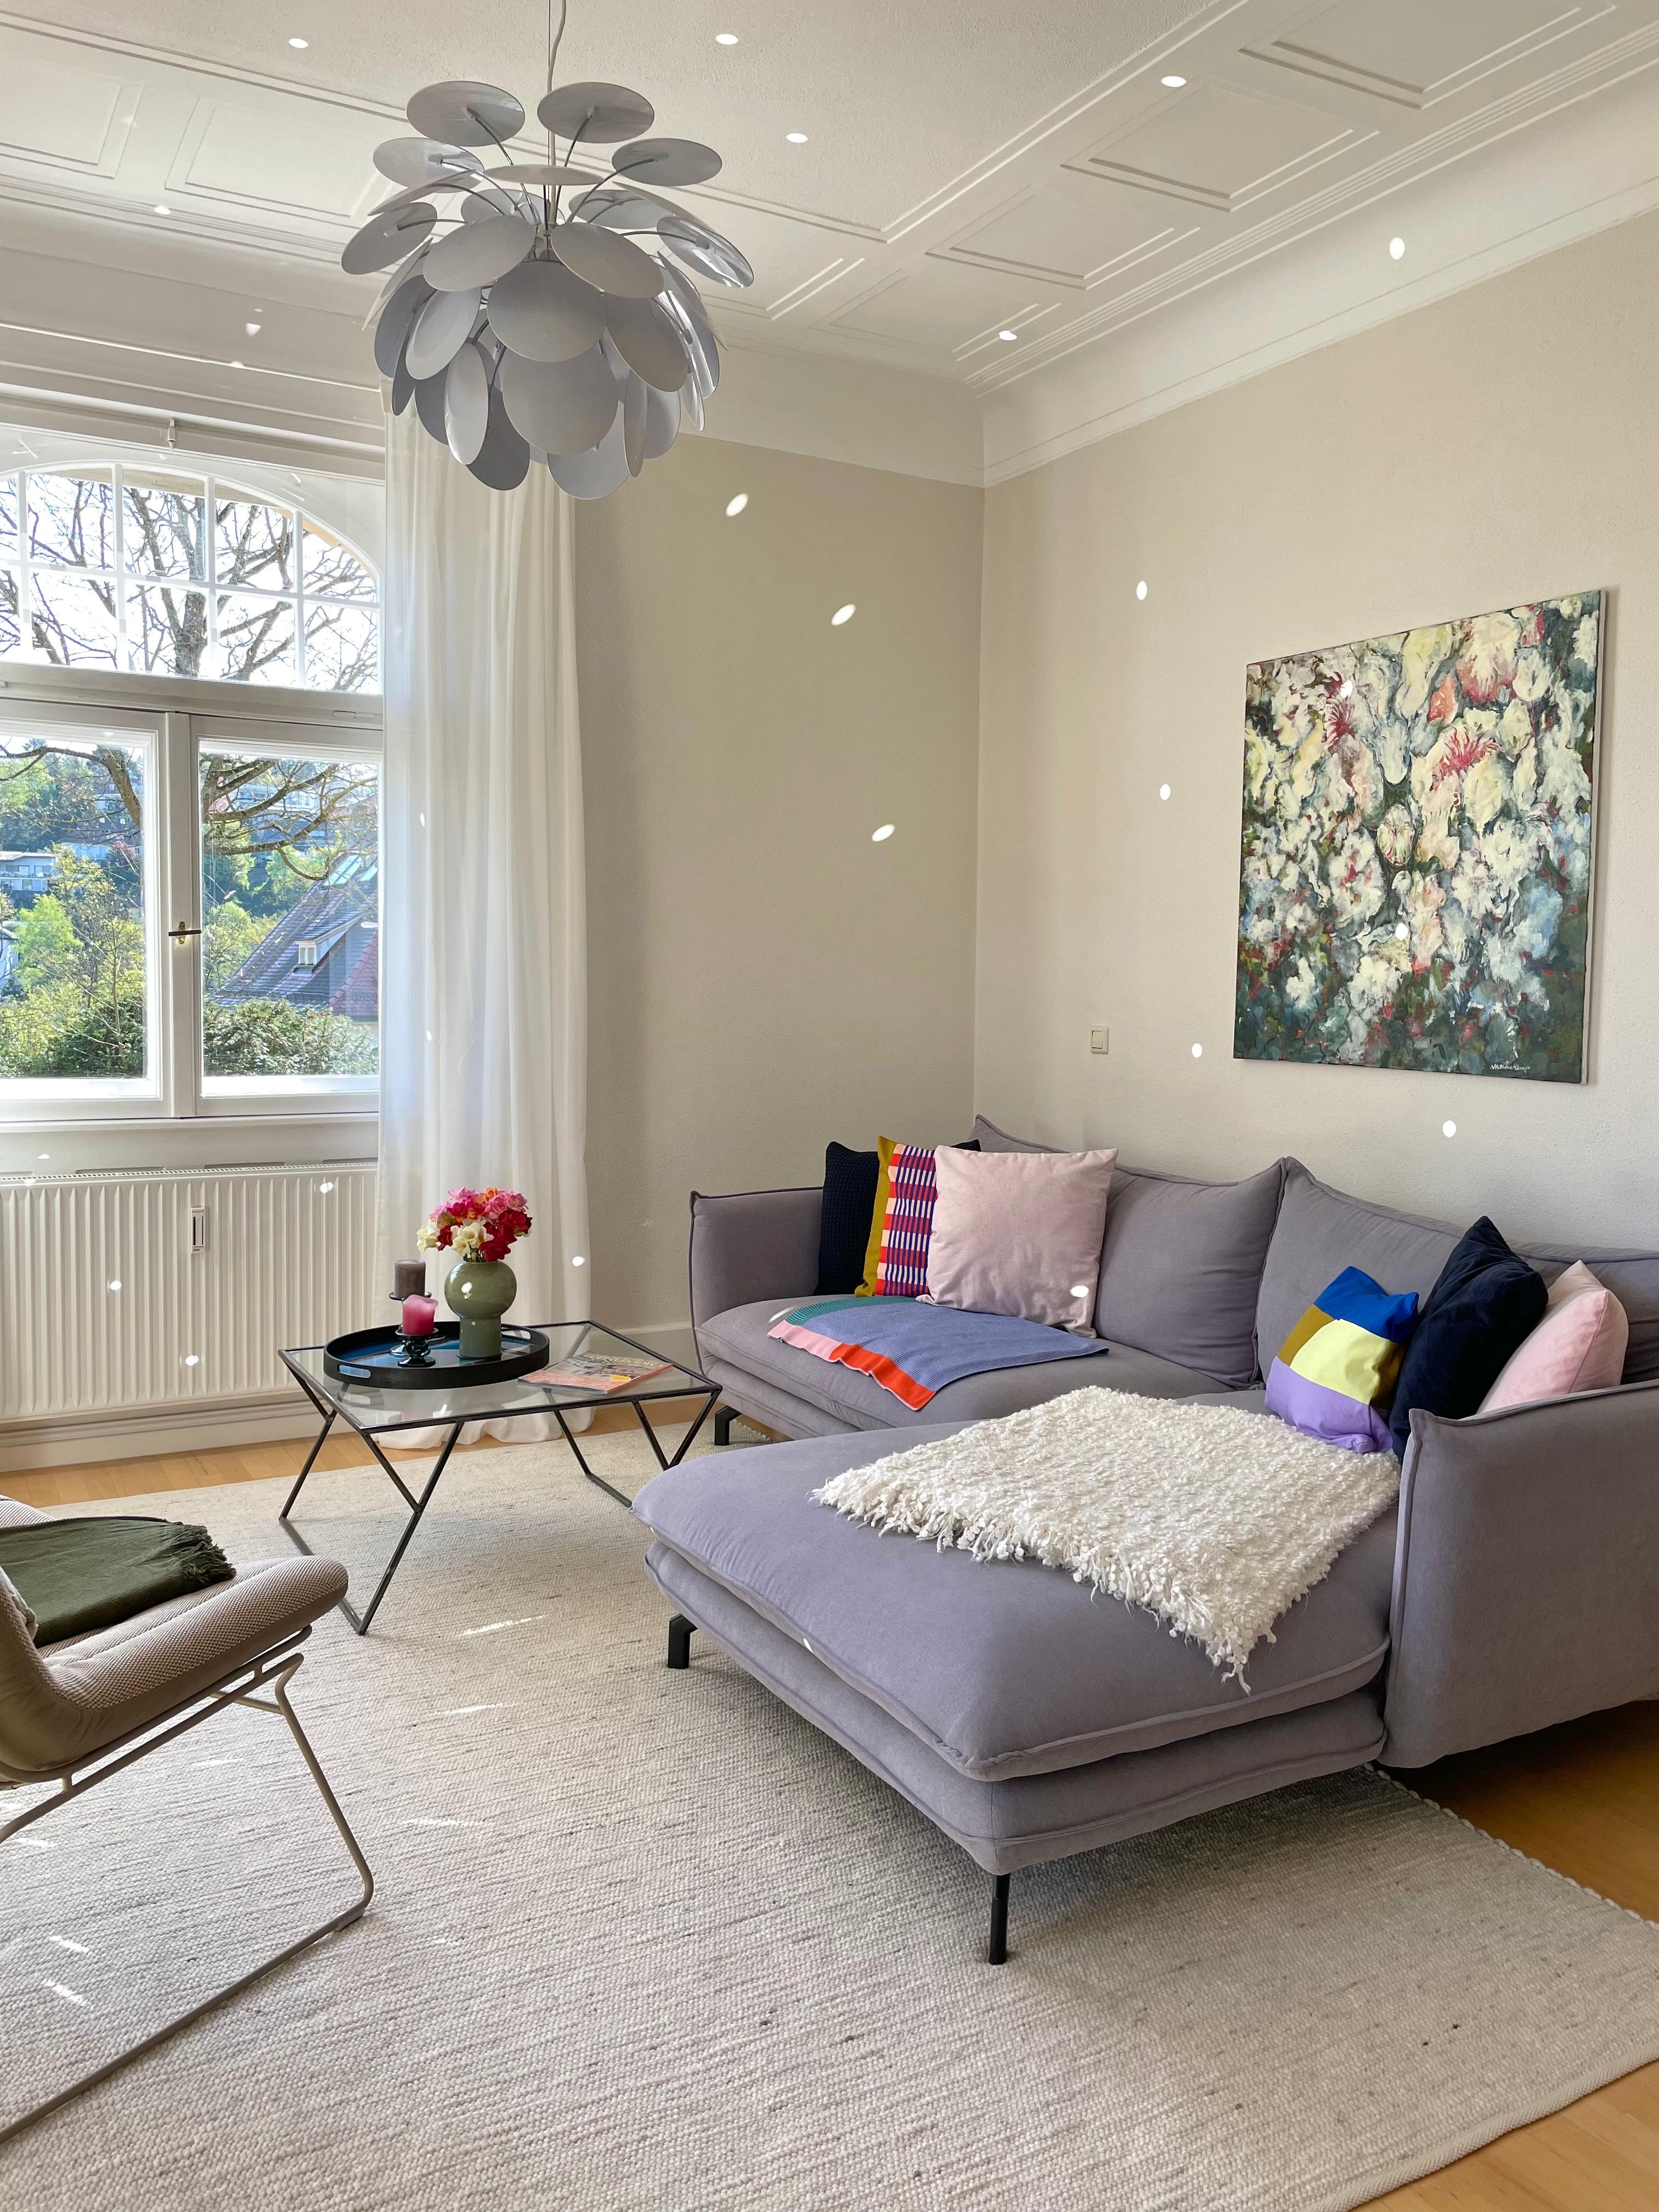 #wohnzimmer #couch #gemütlich #altbau #altbauliebe #altbaucharme